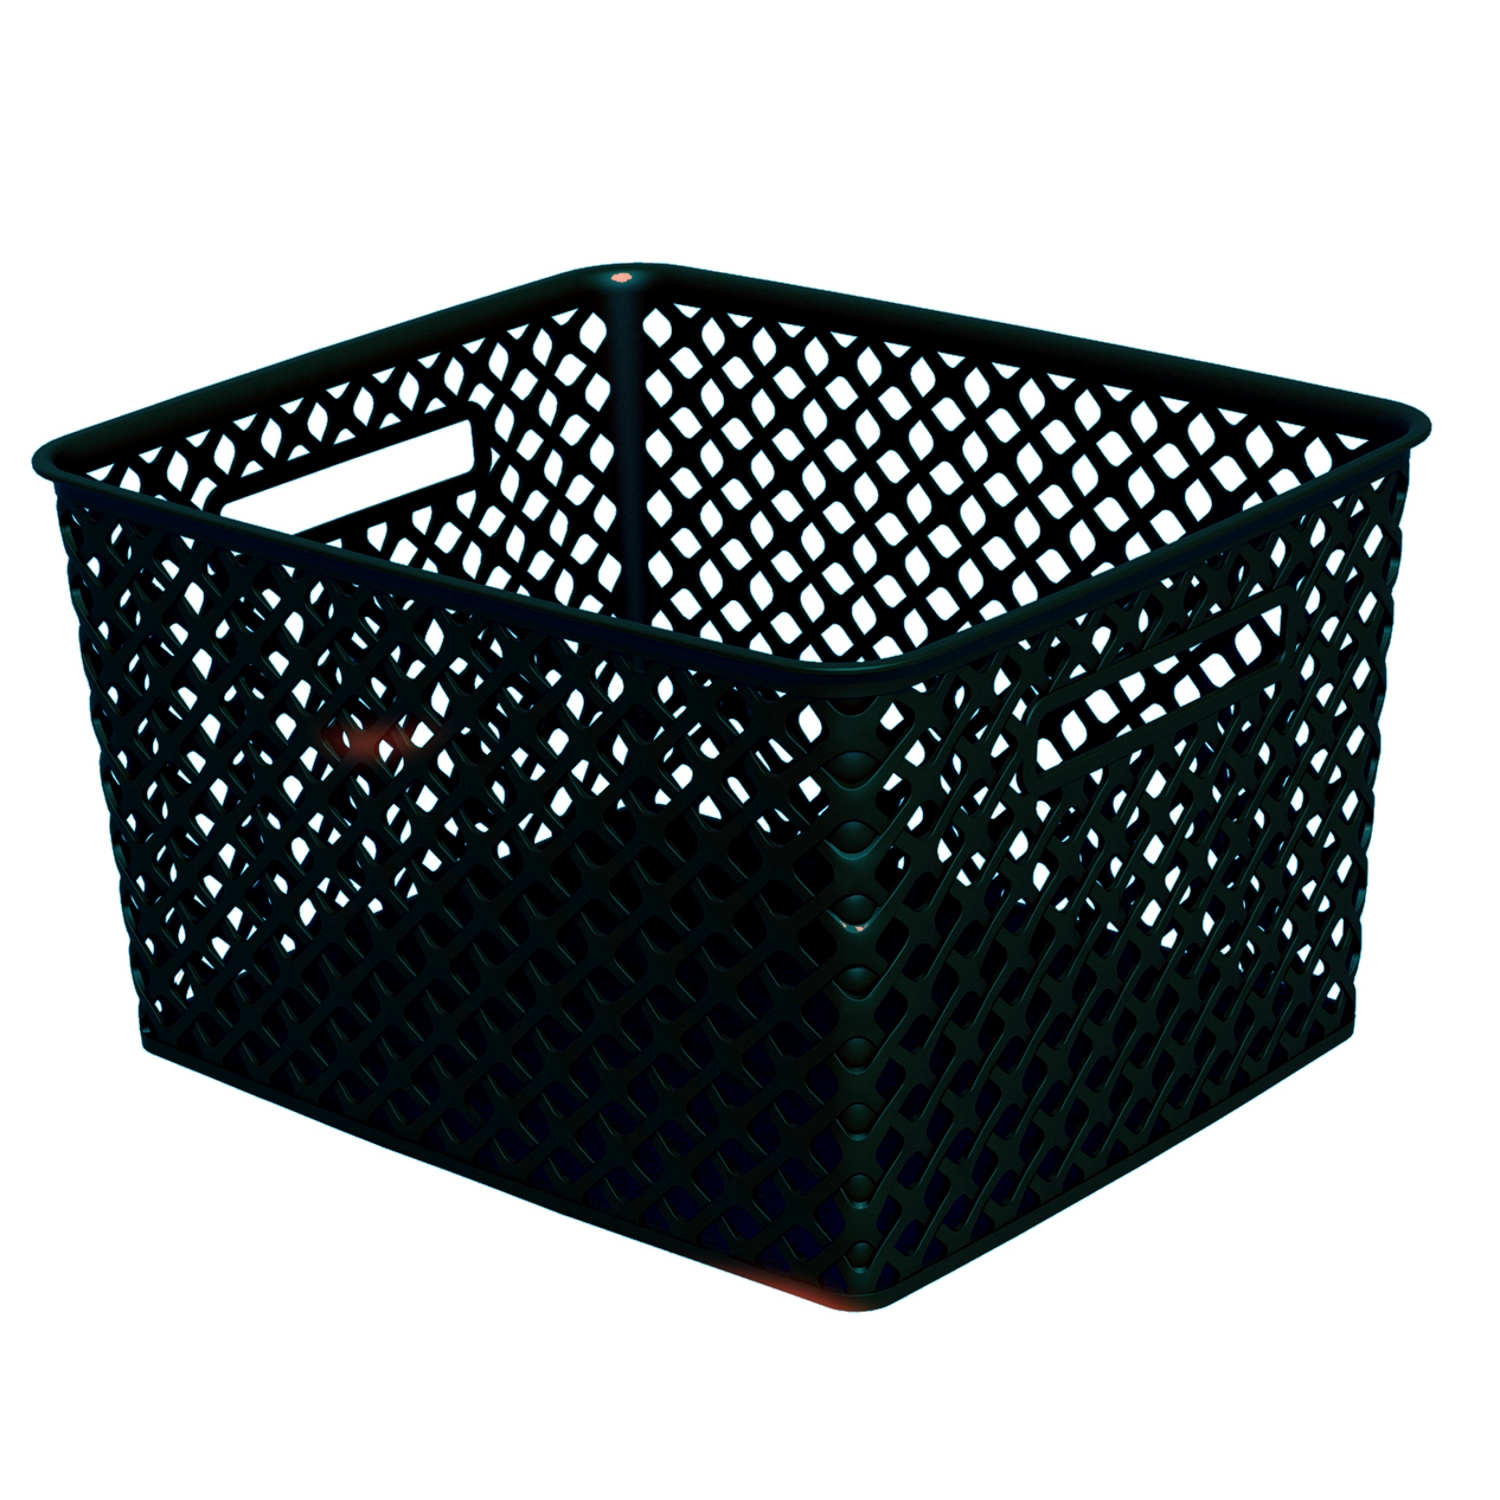 Mainstays Large Black Decorative Storage Basket - image 1 of 6